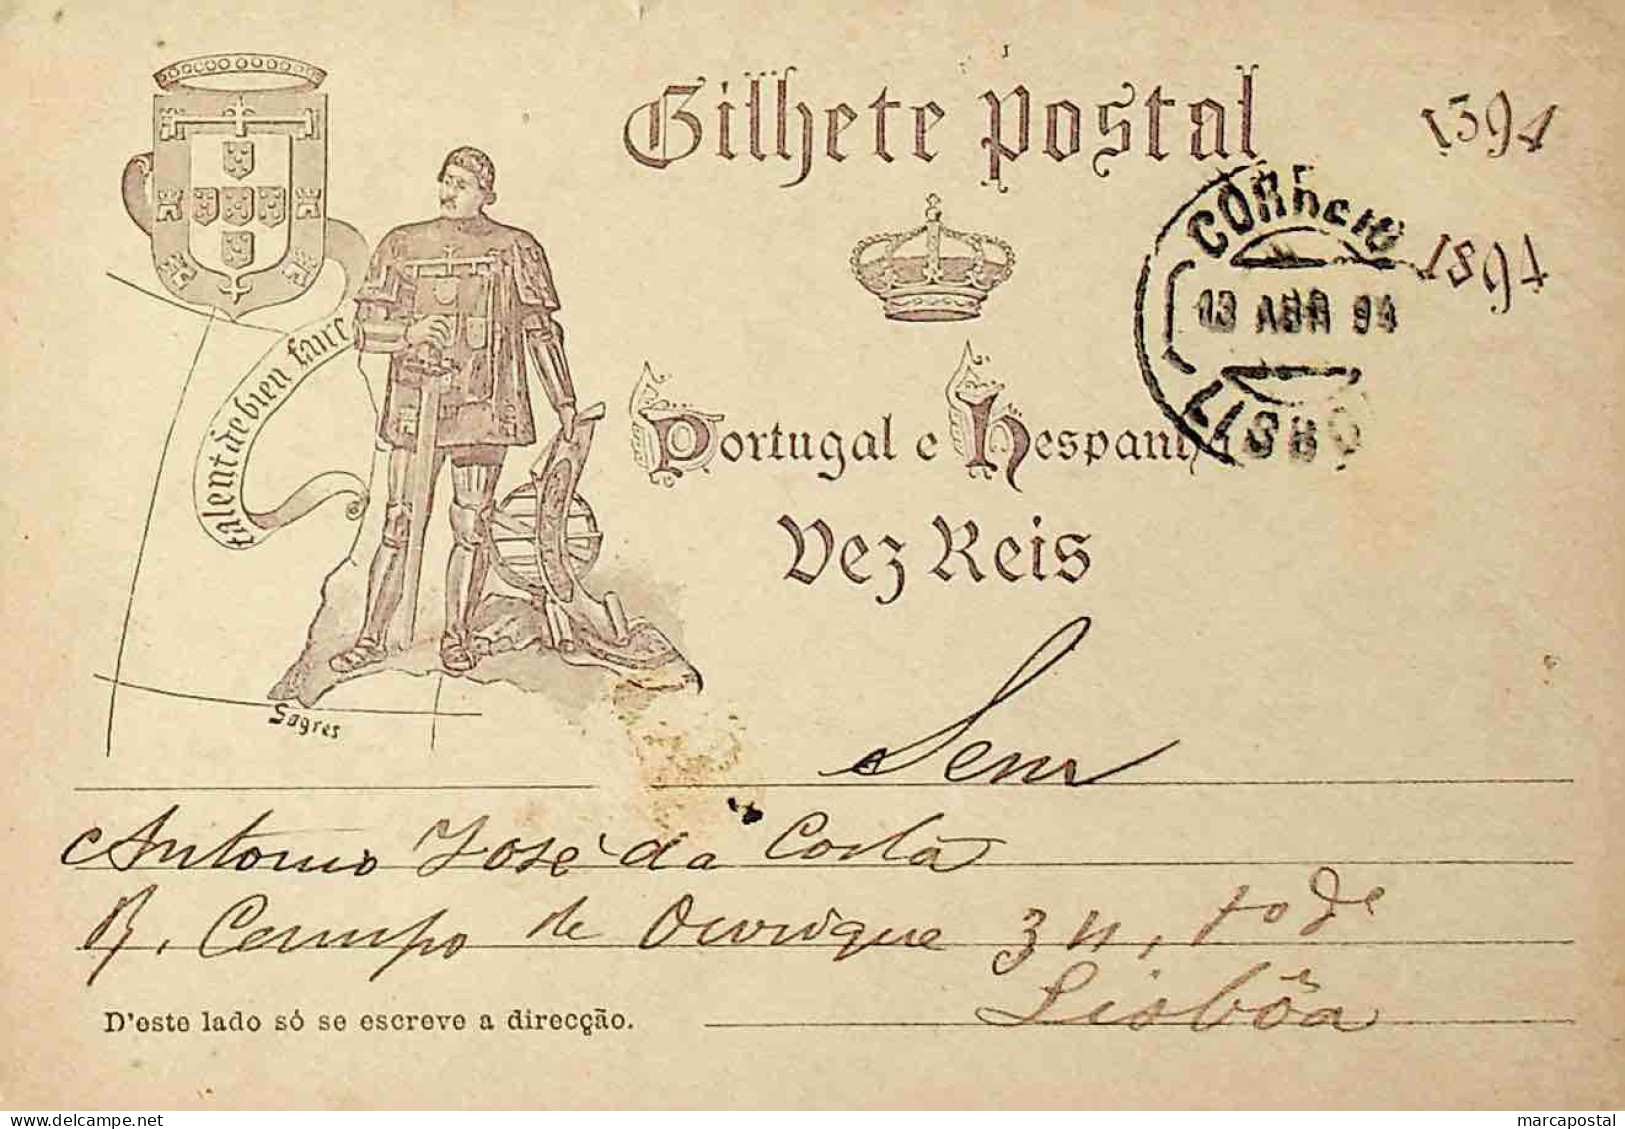 1894 Portugal Bilhete Postal Inteiro V Centenário Do Nascimento Do Infante D. Henrique Circulado Em Lisboa - Ganzsachen